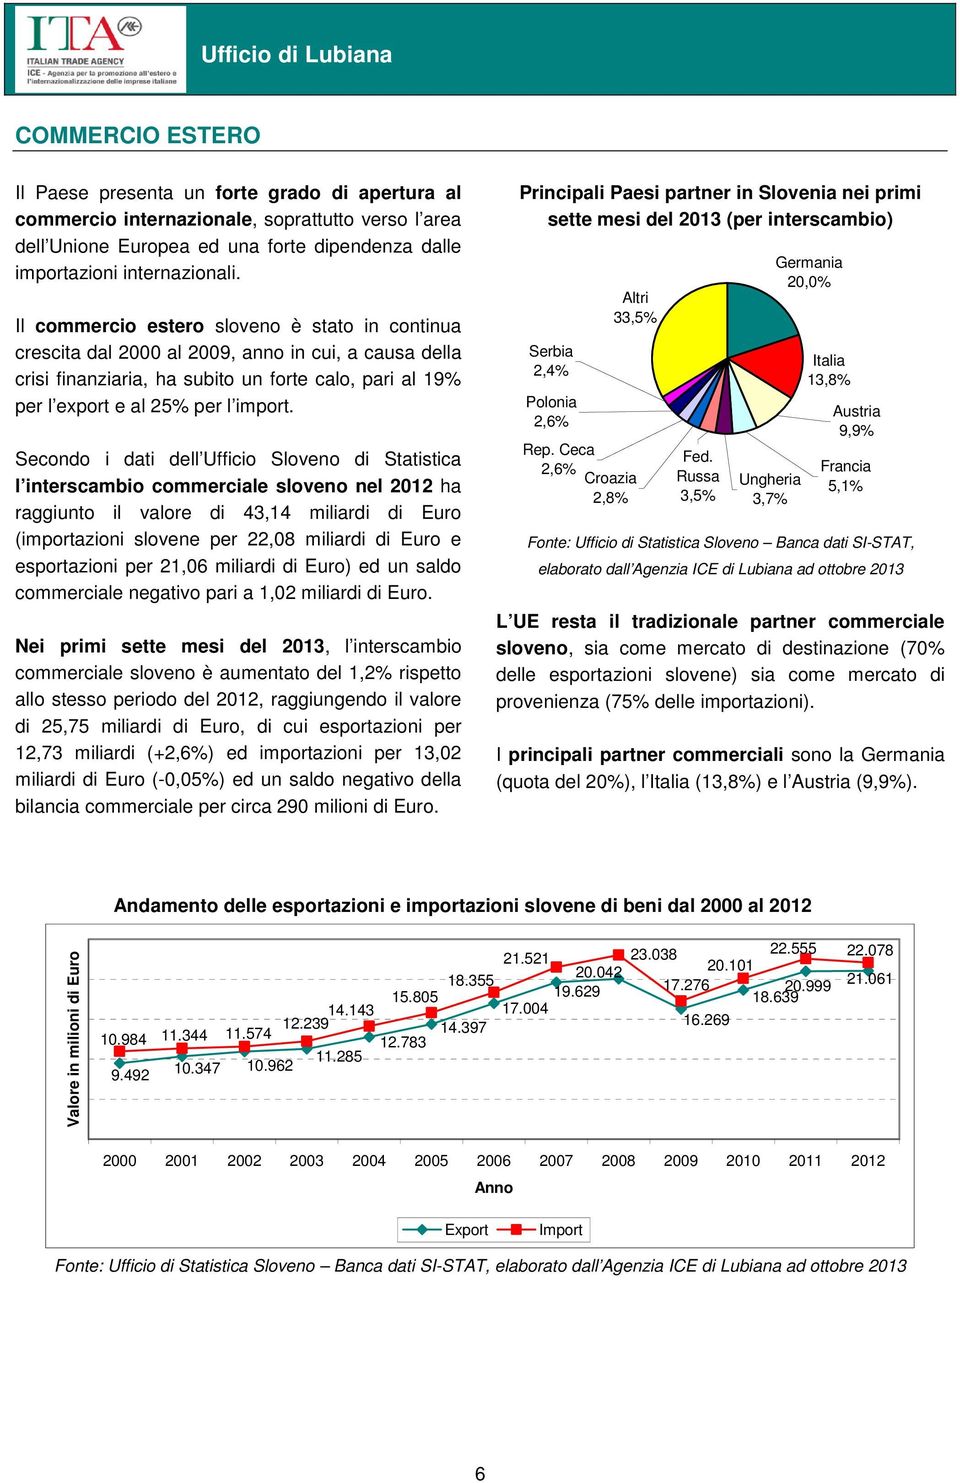 Secondo i dati dell Ufficio Sloveno di Statistica l interscambio commerciale sloveno nel 2012 ha raggiunto il valore di 43,14 miliardi di Euro (importazioni slovene per 22,08 miliardi di Euro e